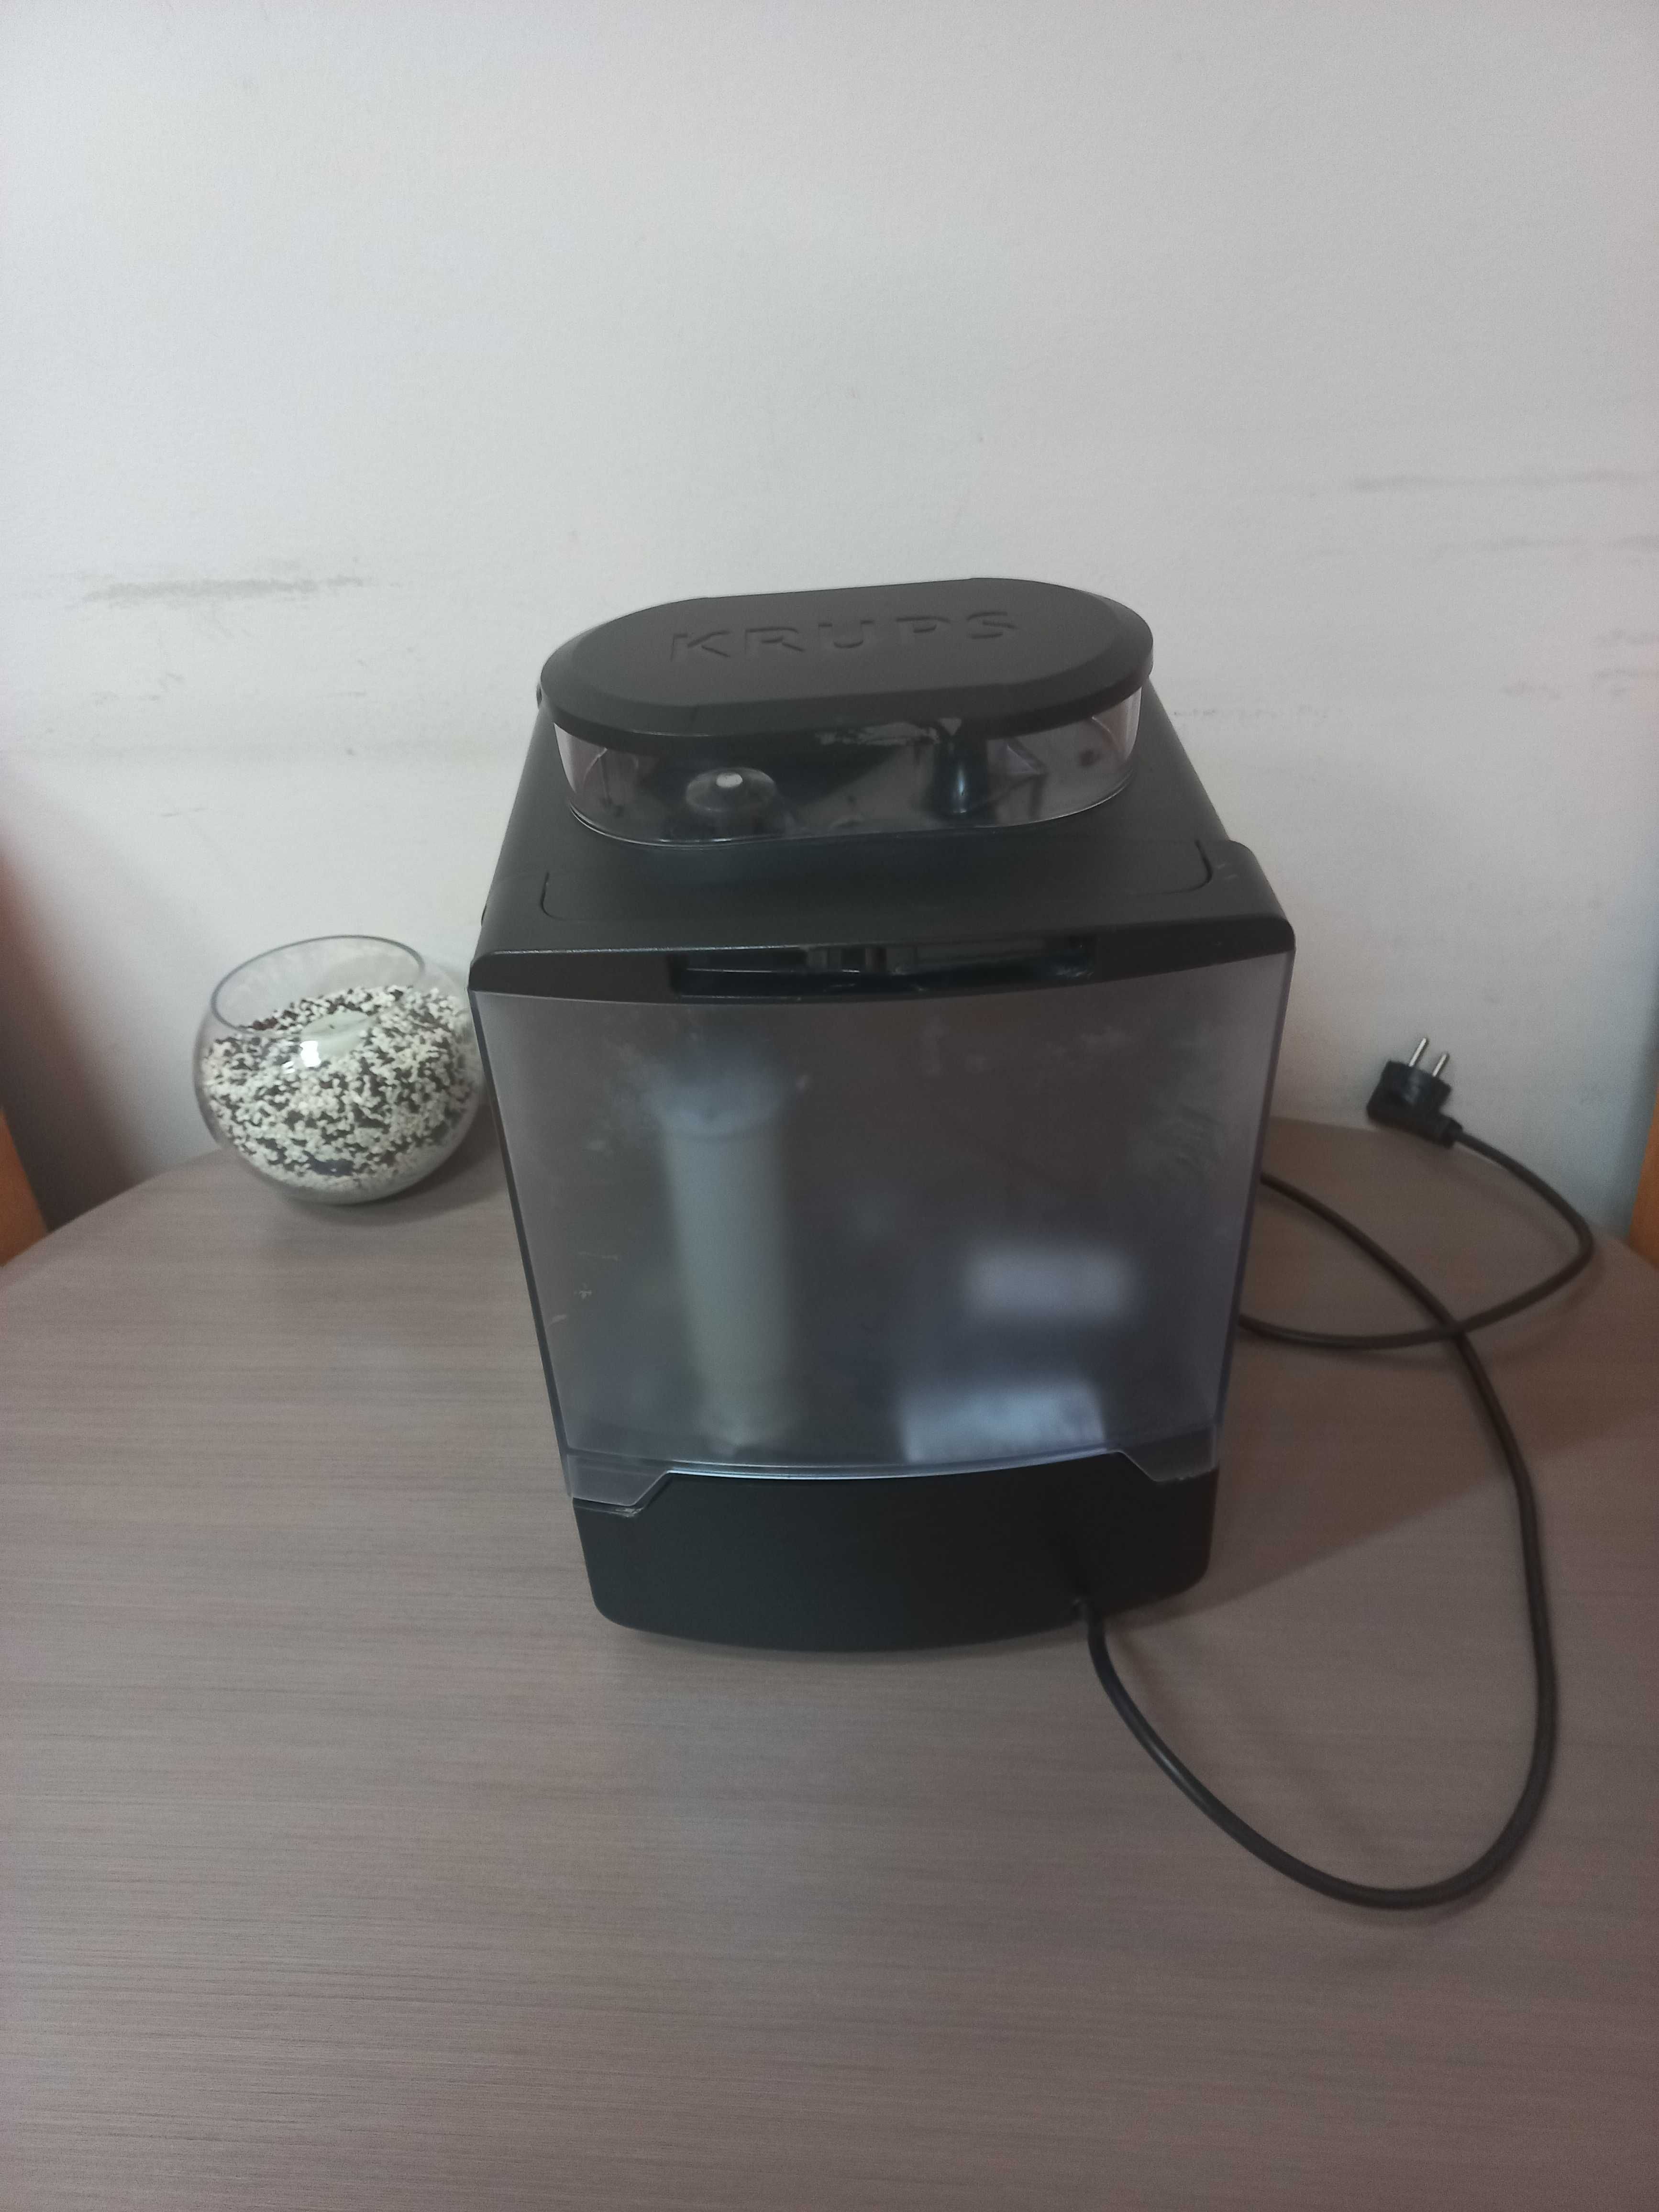 Кафе автомат Krups